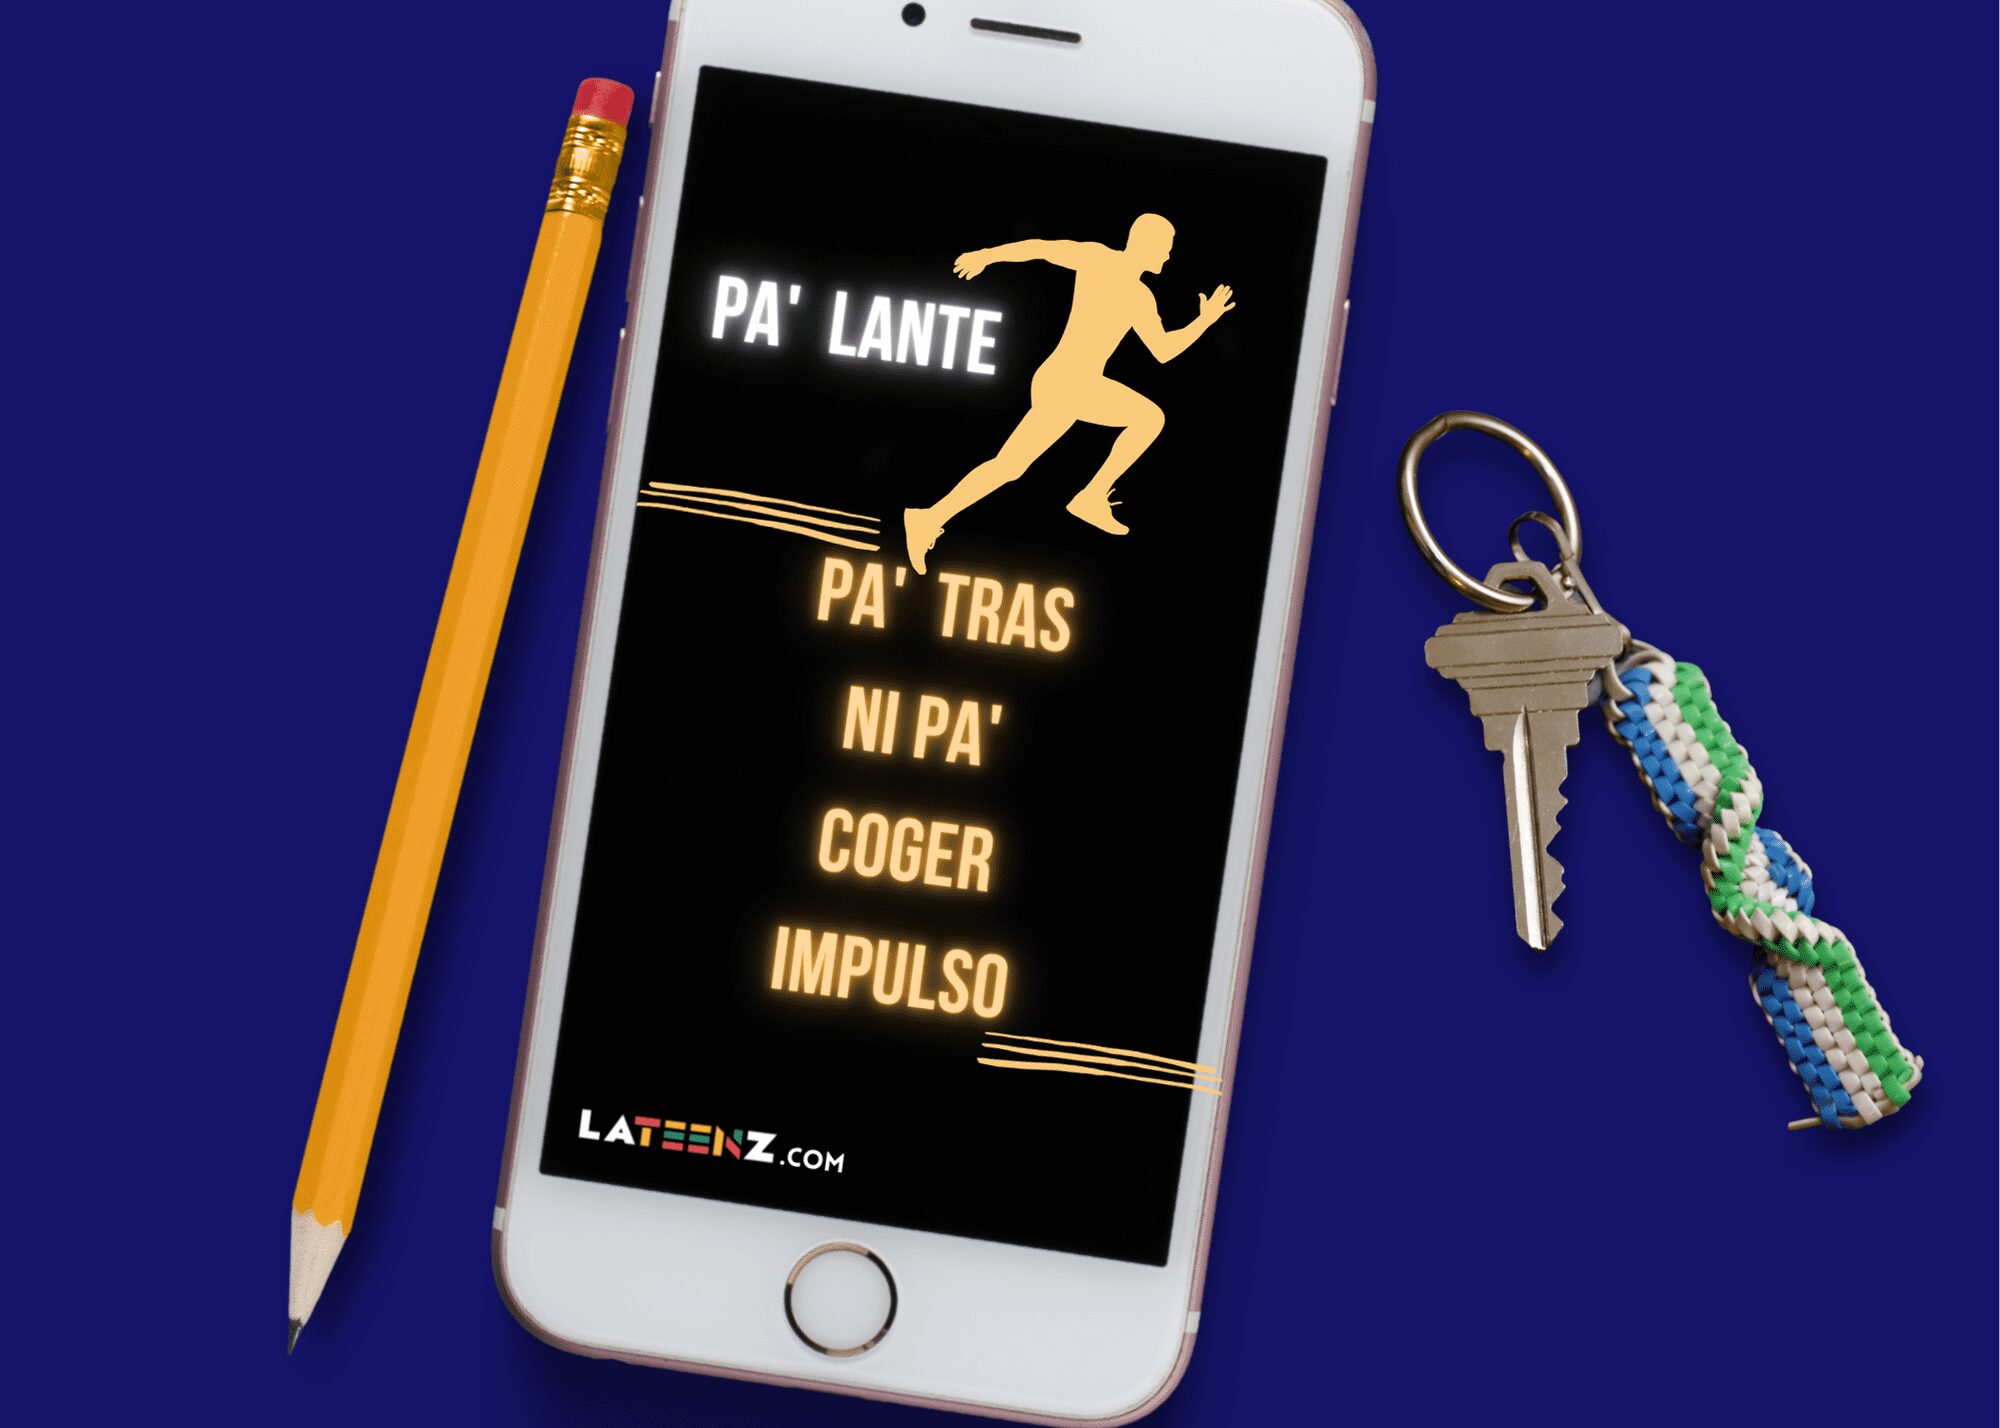 Free “Pa’lante!” Phone Wallpaper